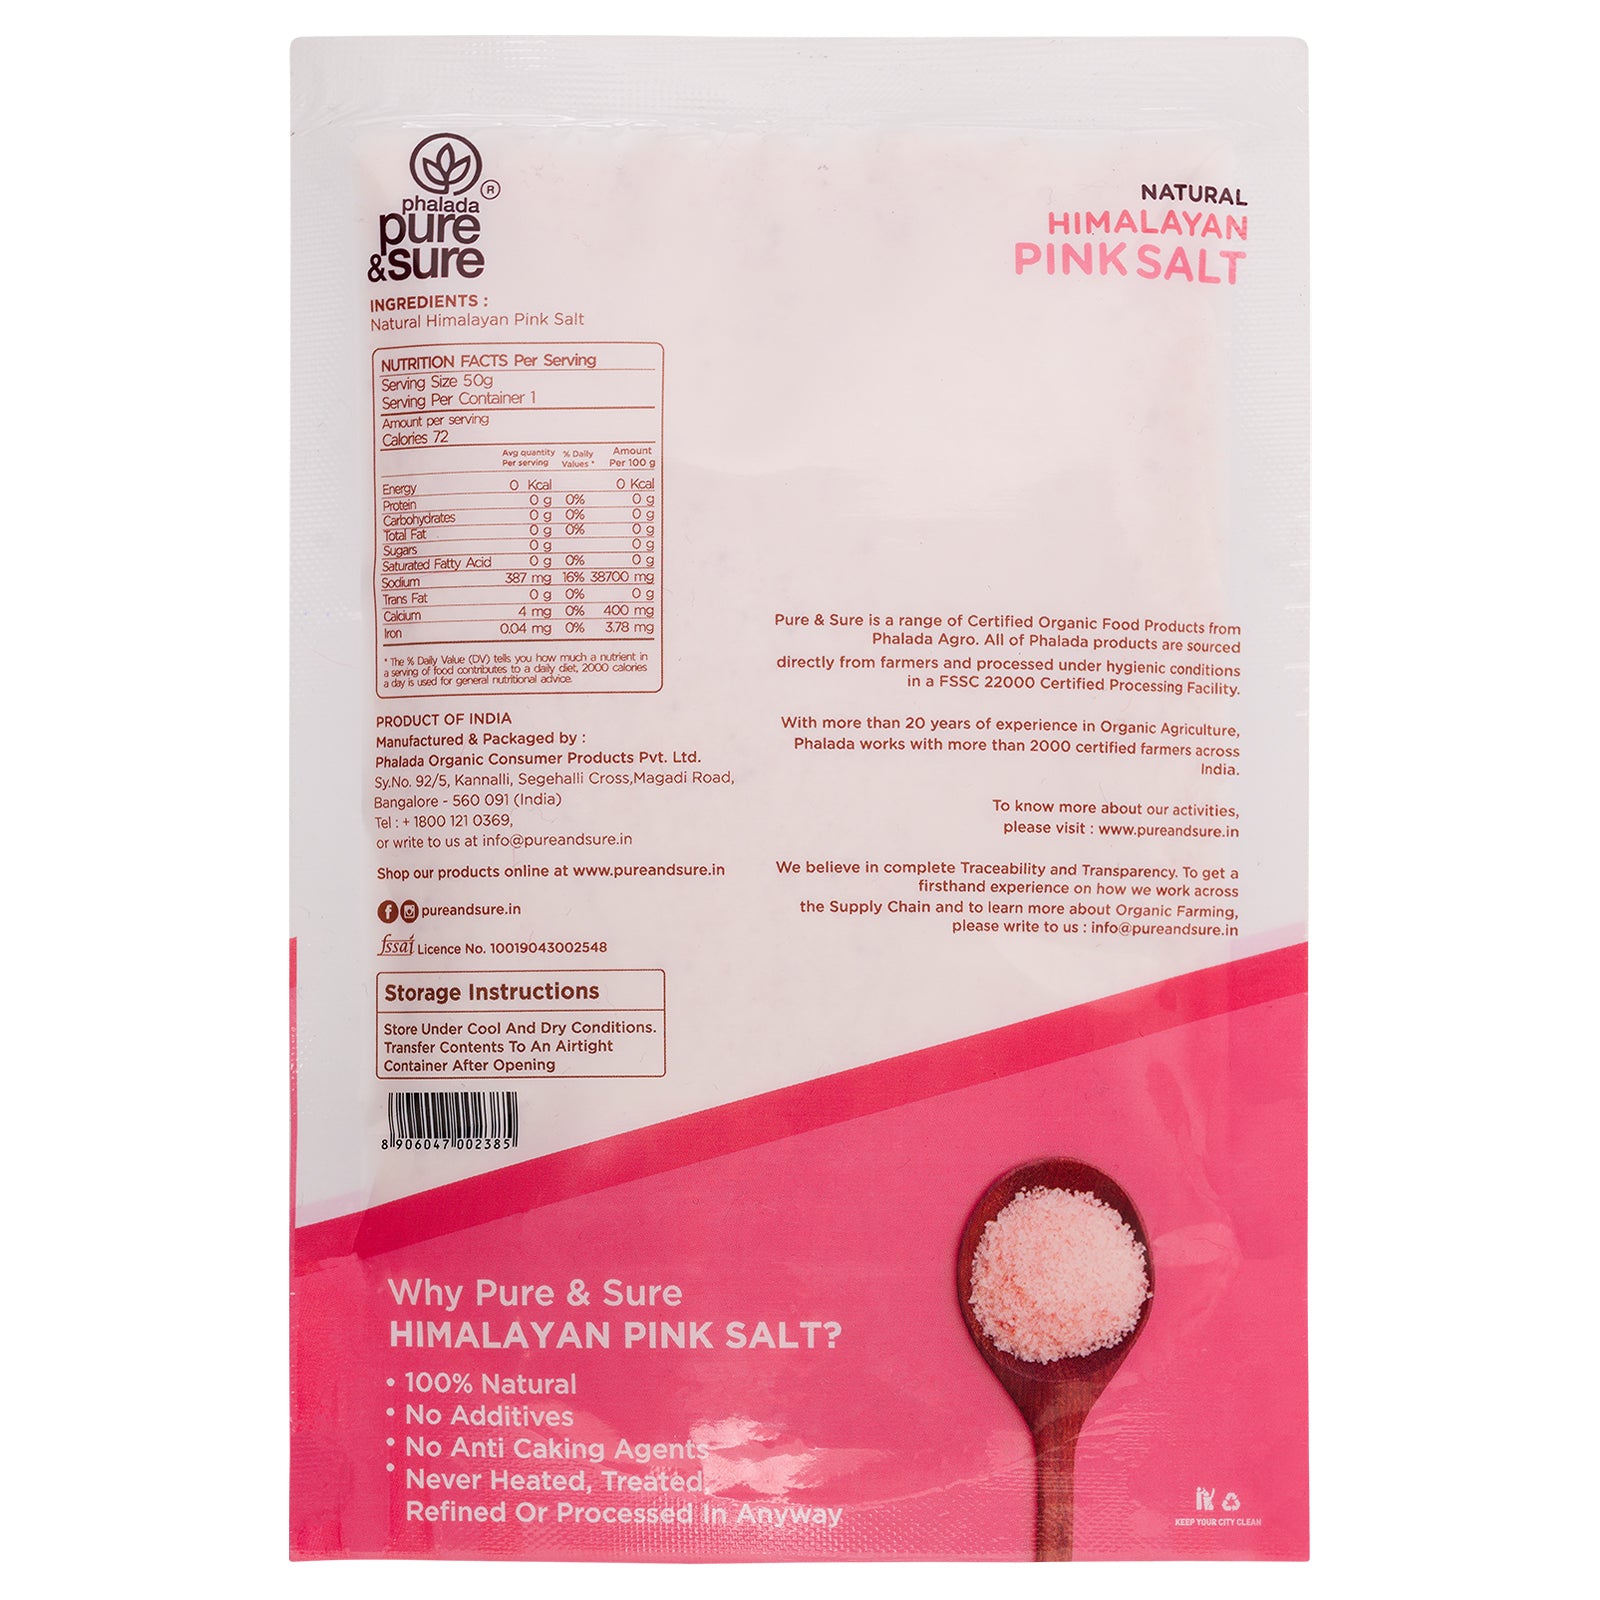 PURE & SURE Himalayan Pink Salt, 500g